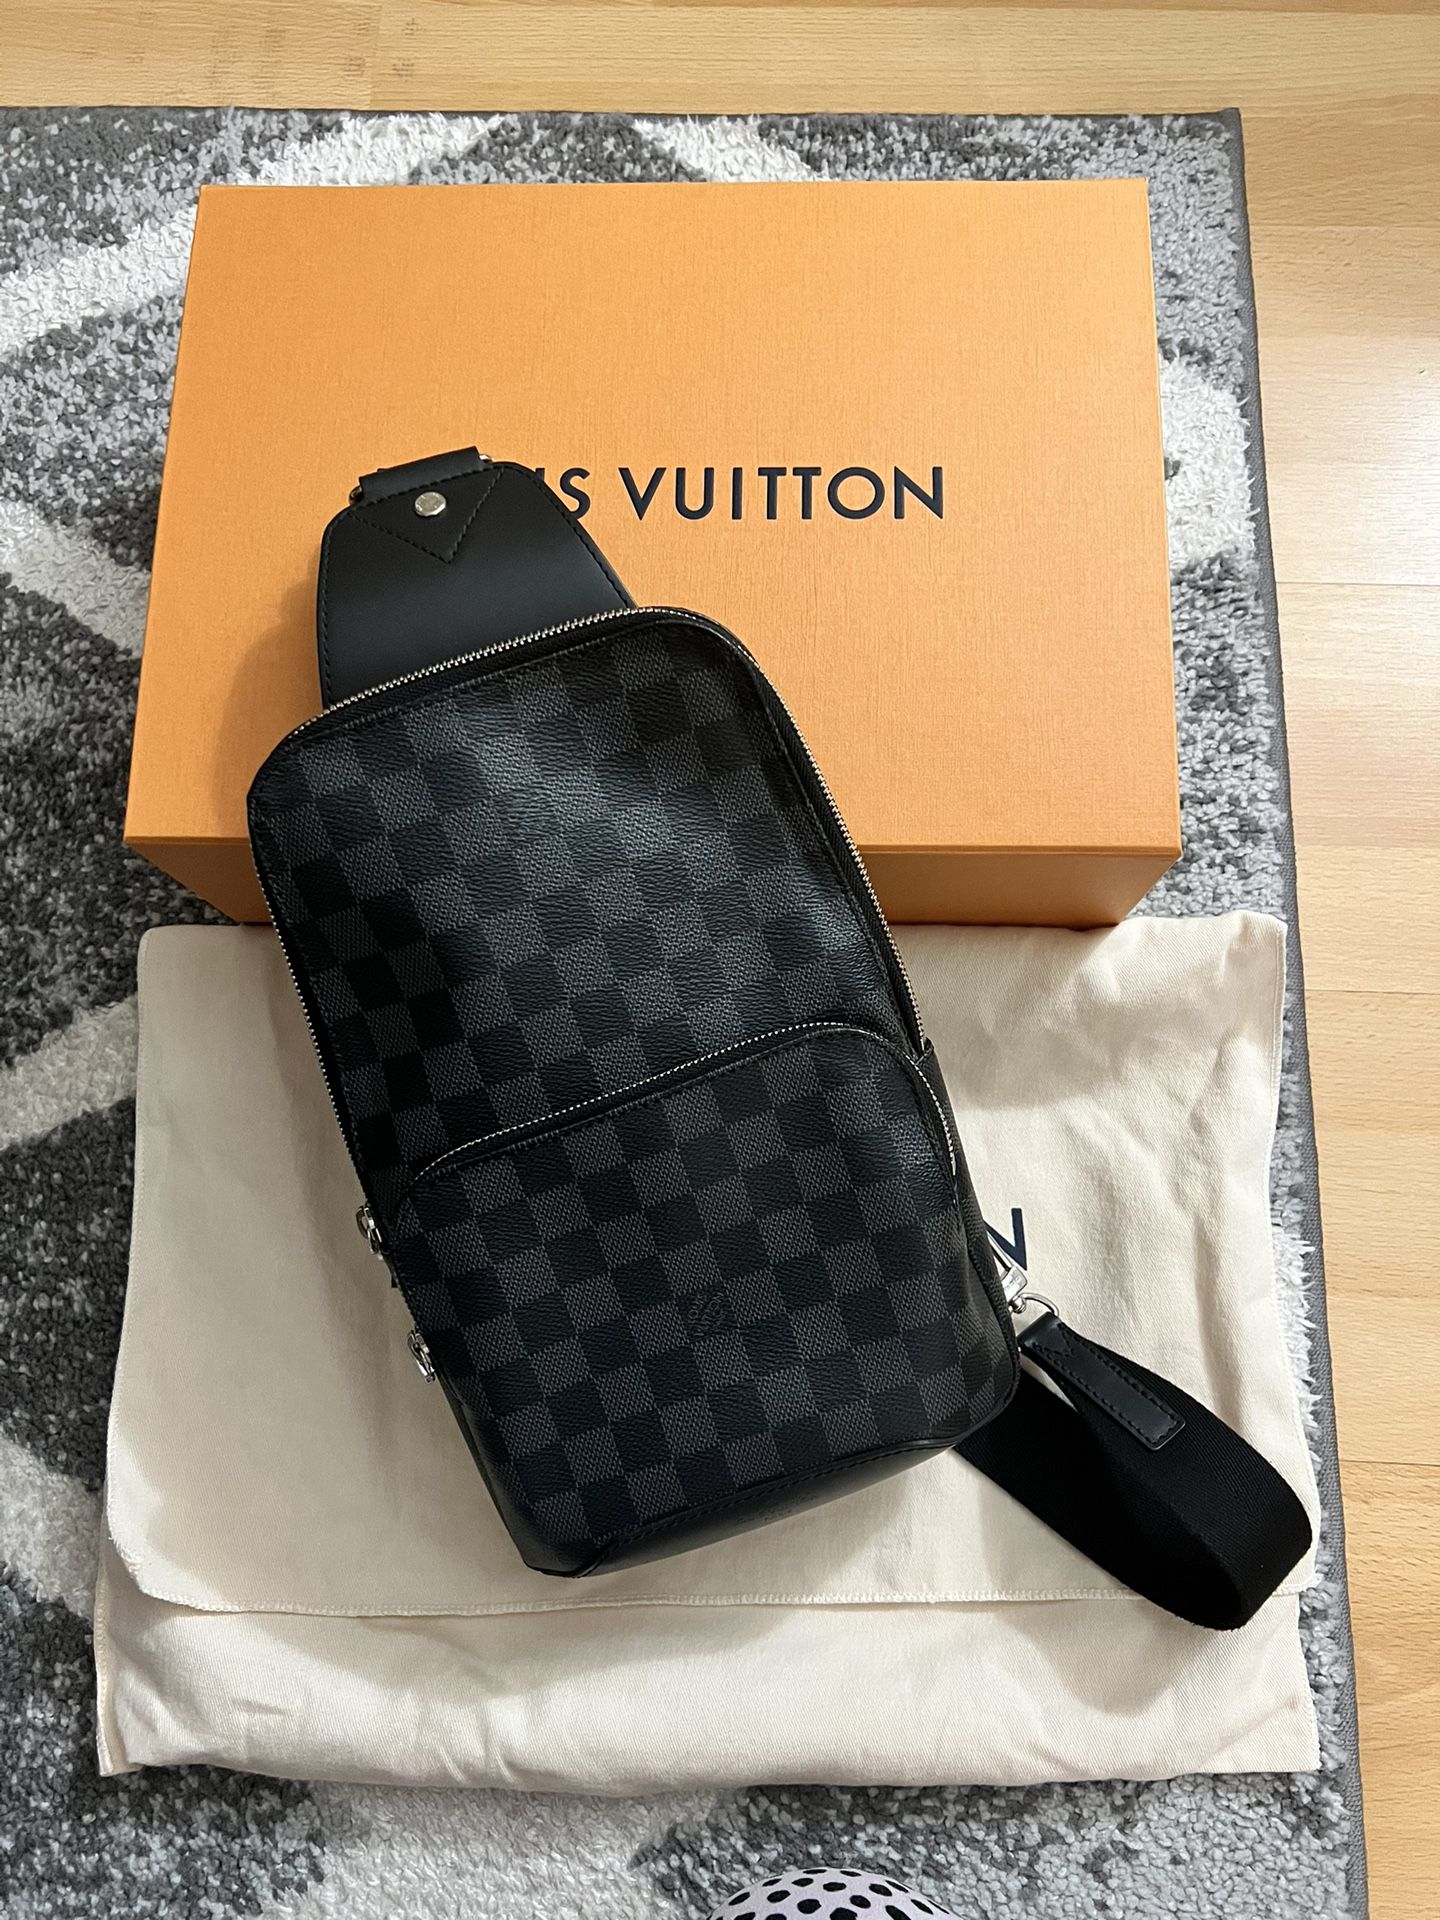 Louis Vuitton Avenue Sling Bag Review 